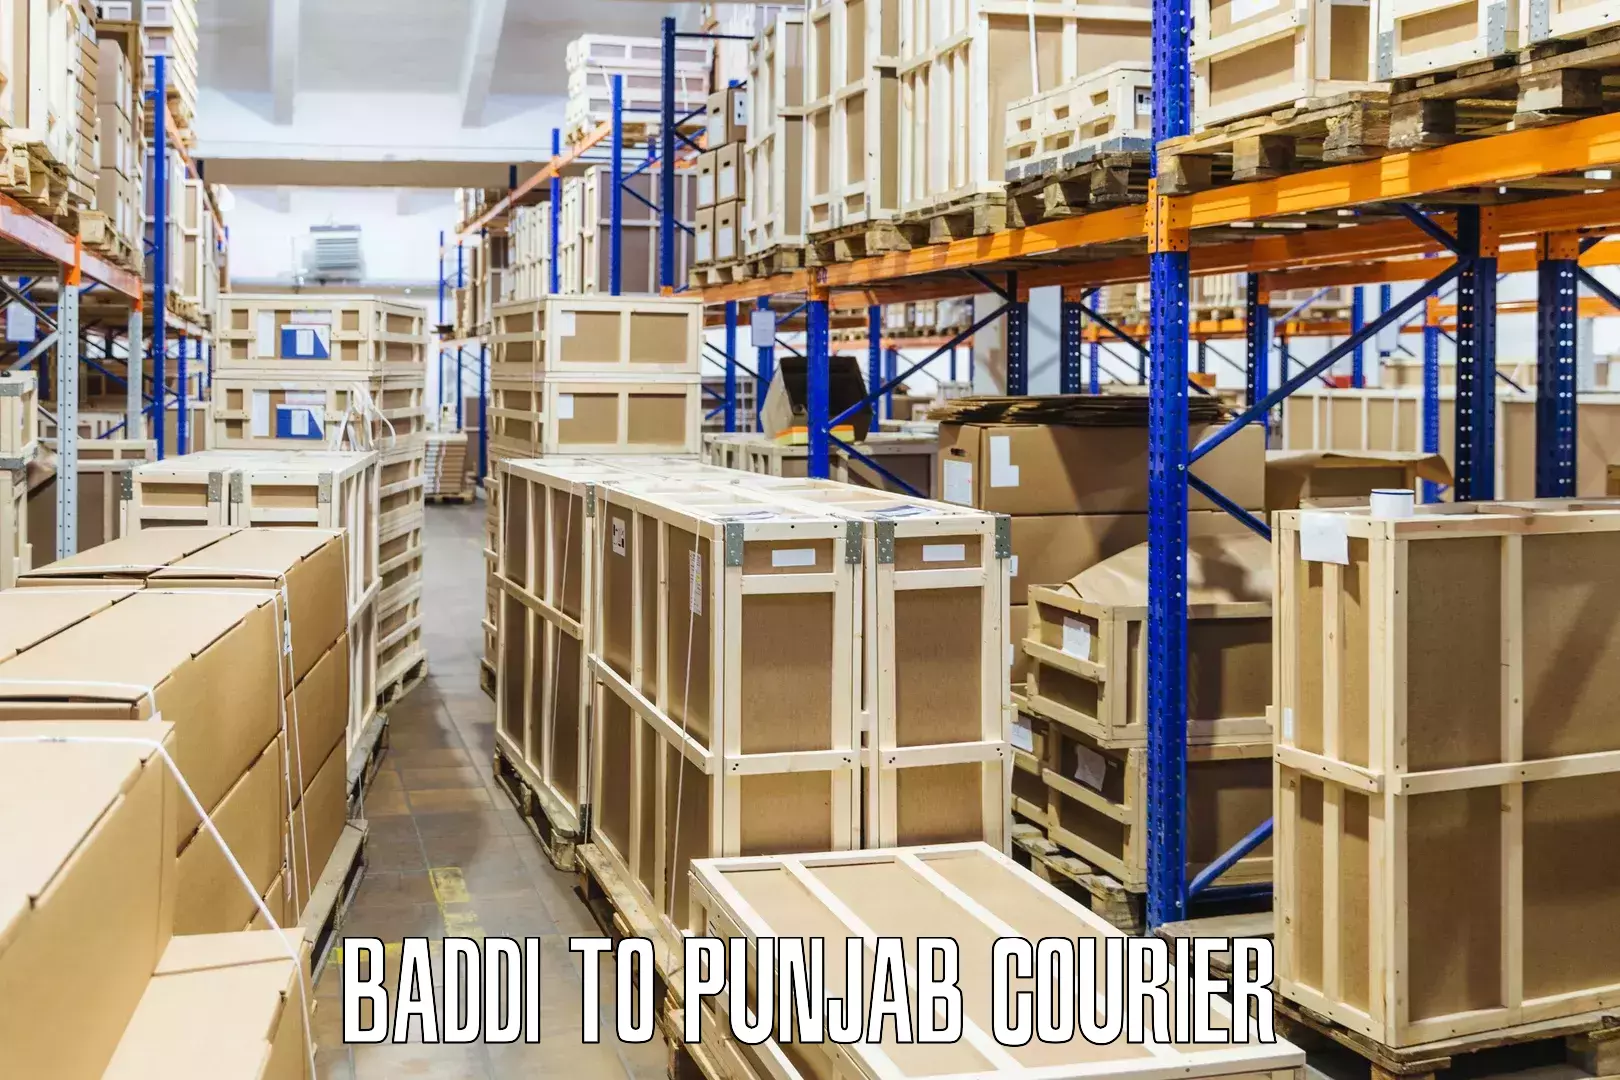 Global parcel delivery Baddi to Punjab